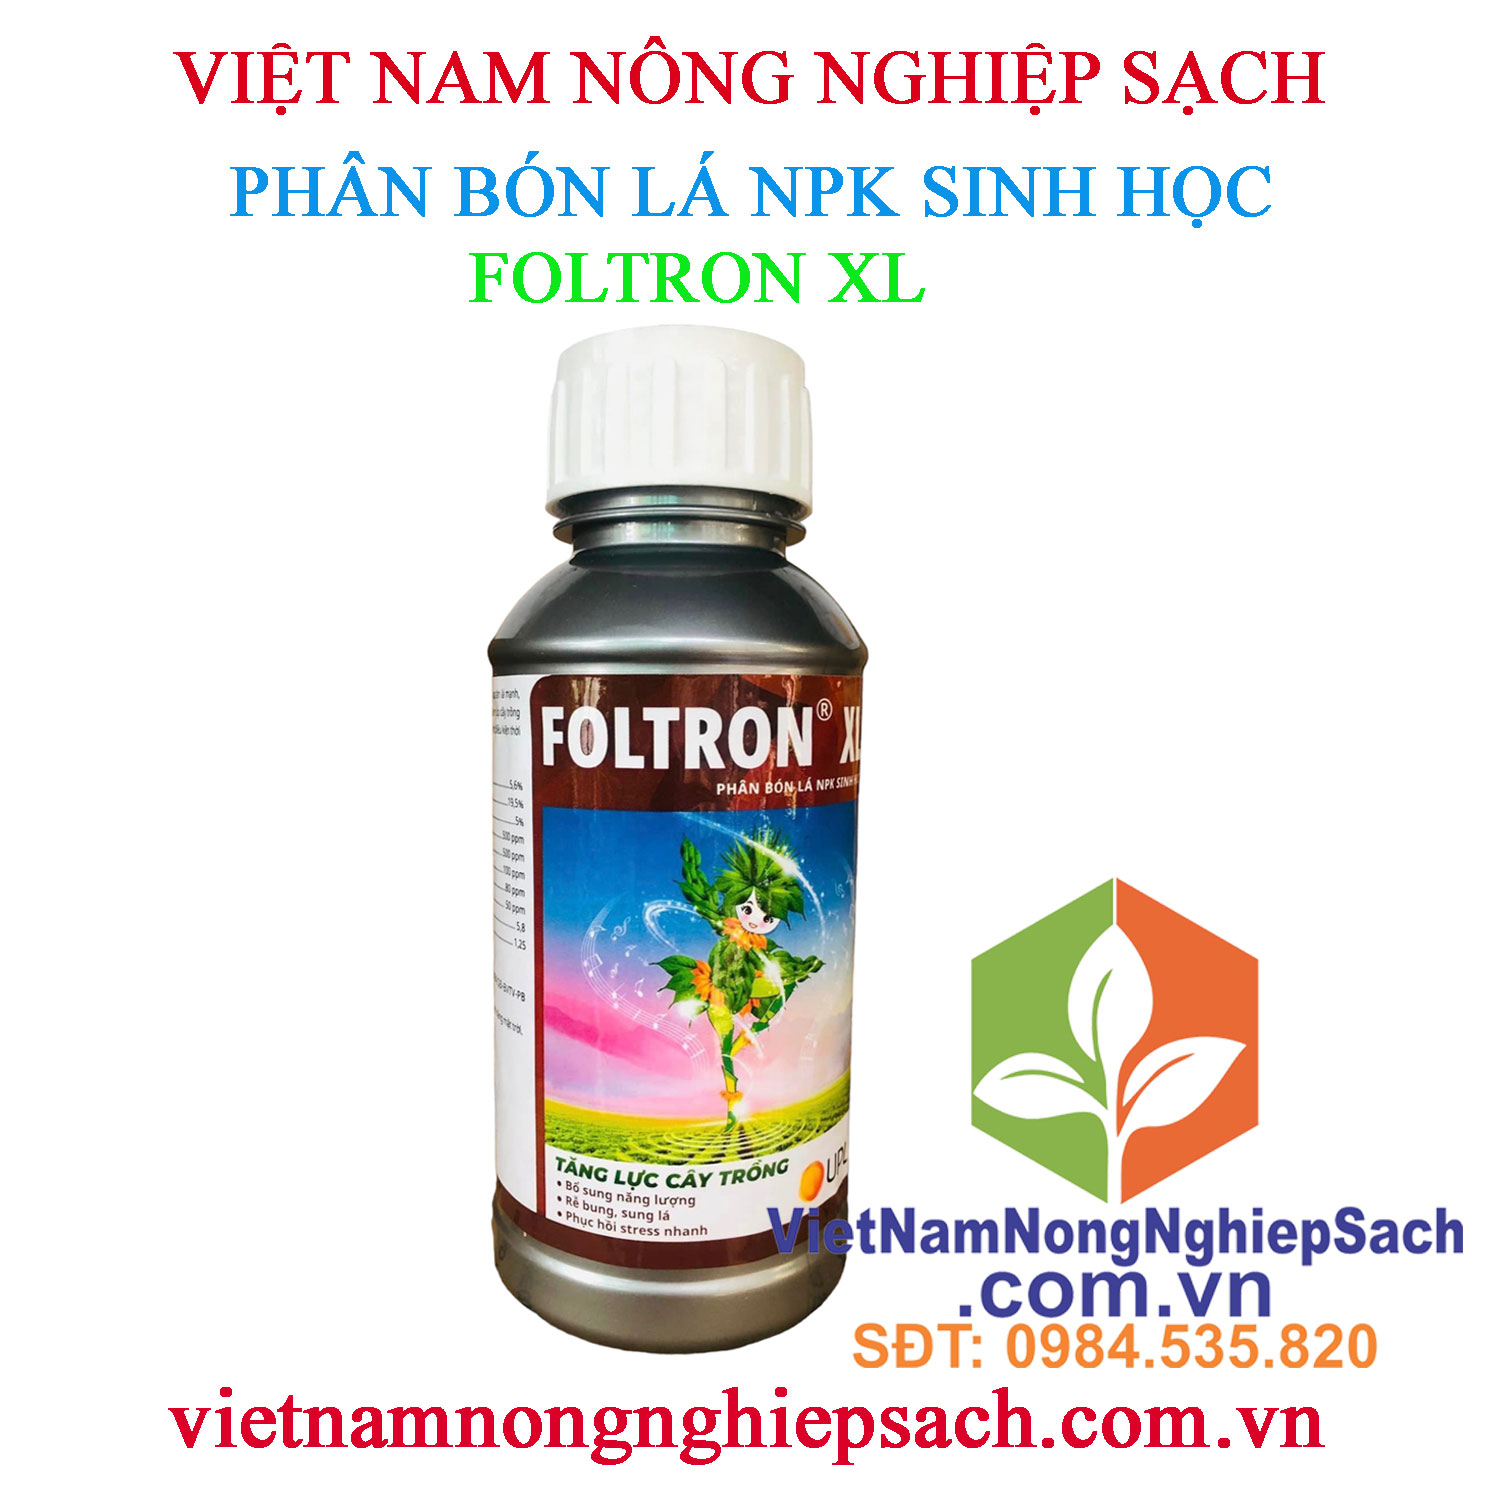 FOLTRON-XL